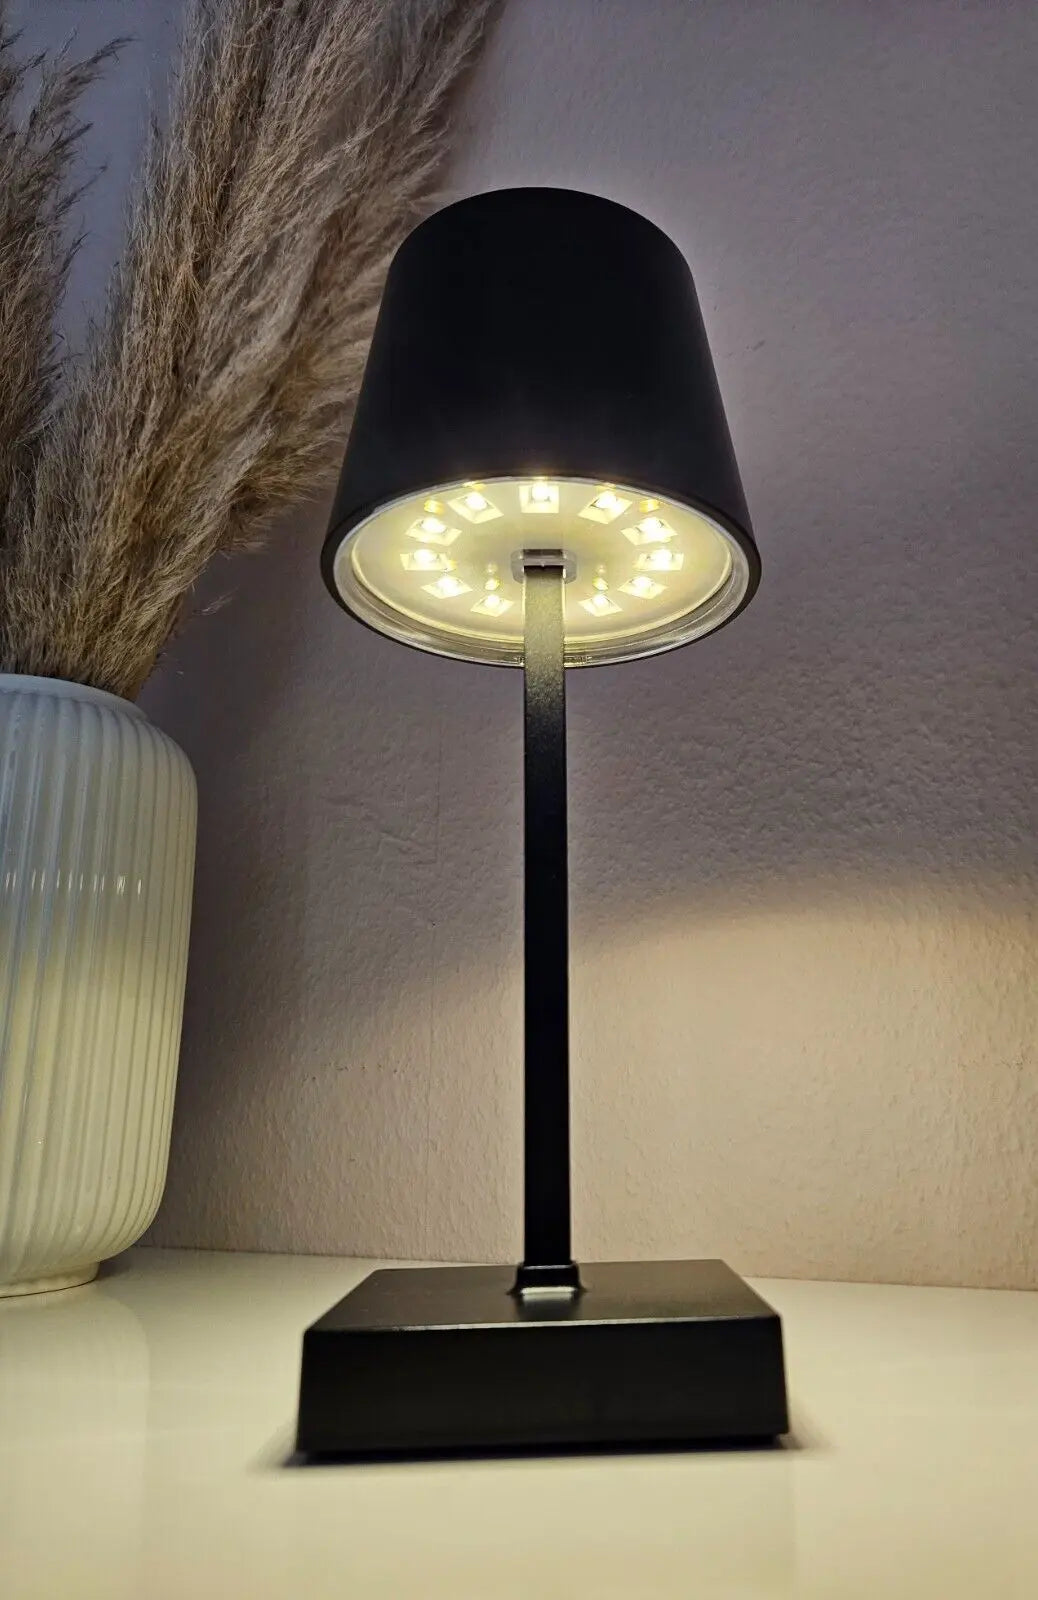 Tischleuchte Touch dimmbar LED Lampe schwarz kabellos Höhe 26 cm